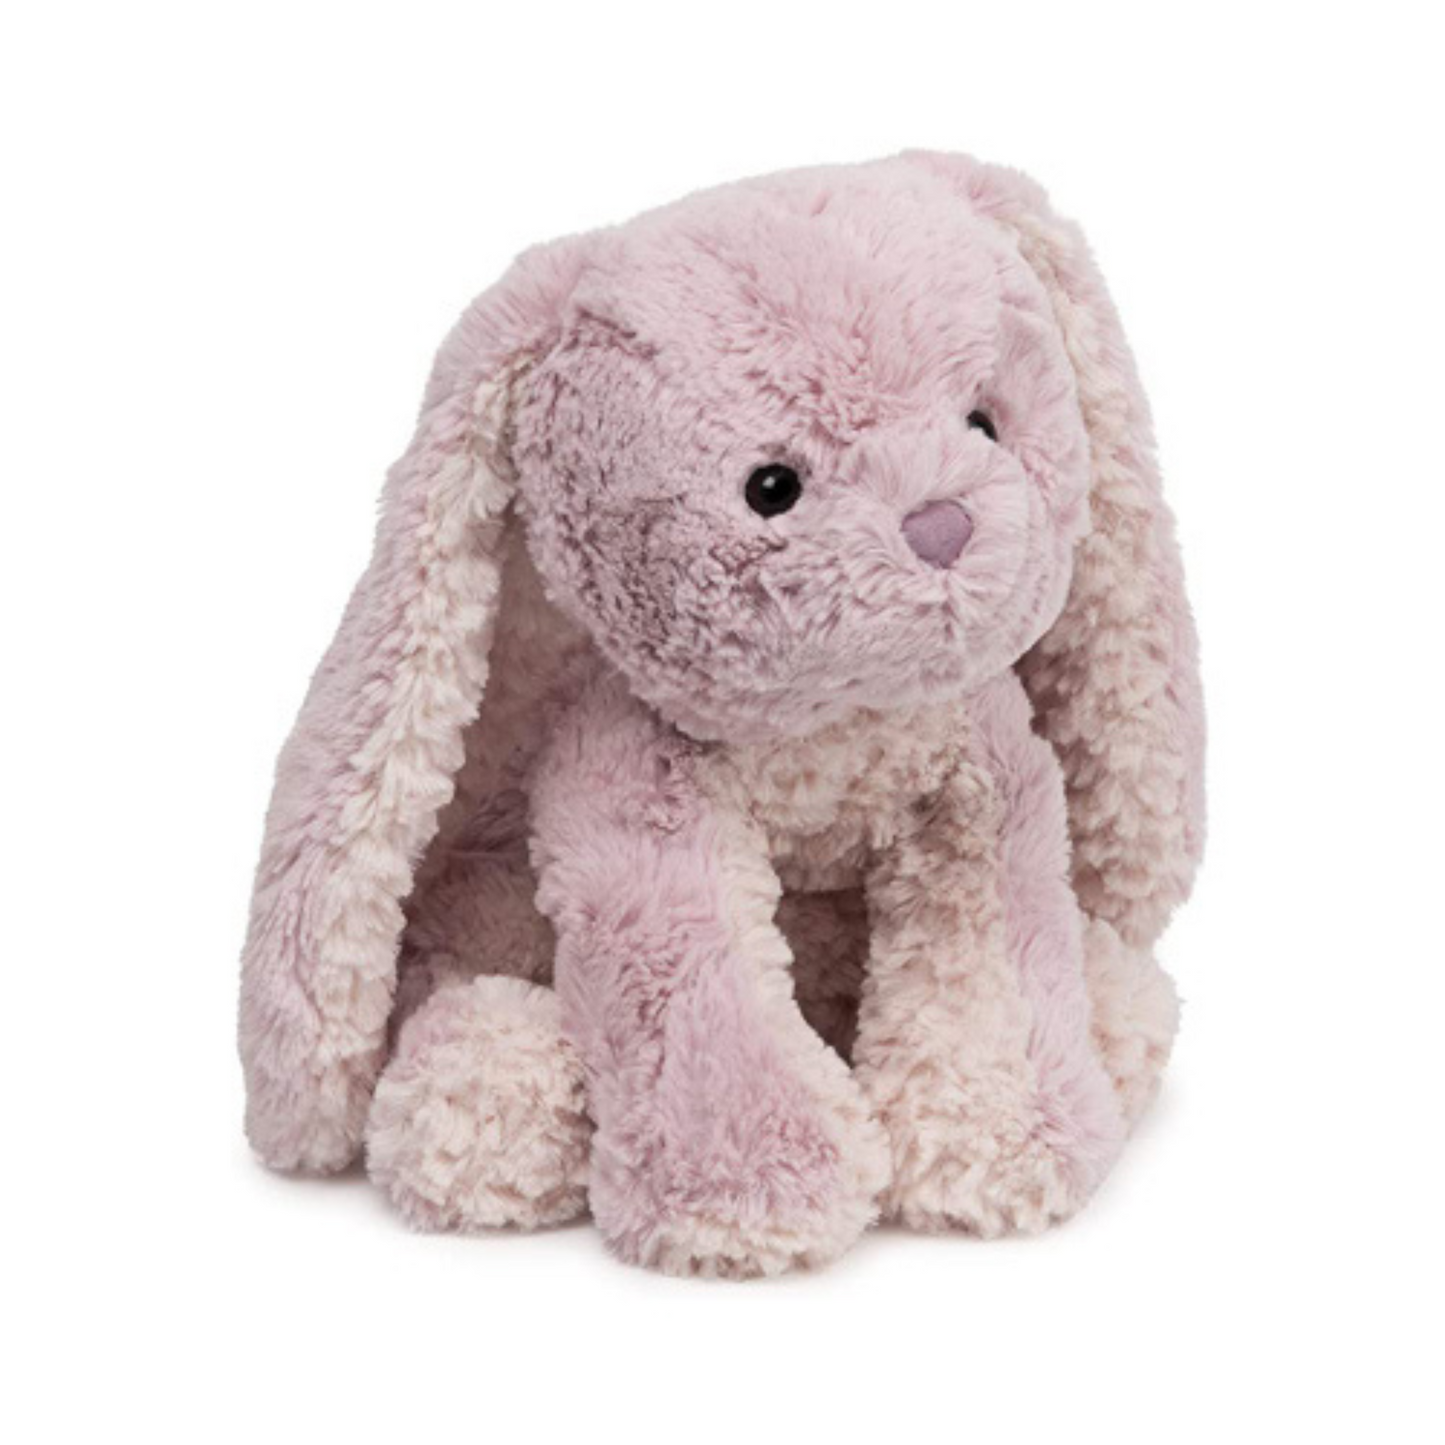 Personalized Bunny Soft Toy - 10" Gund Cozys Bunny